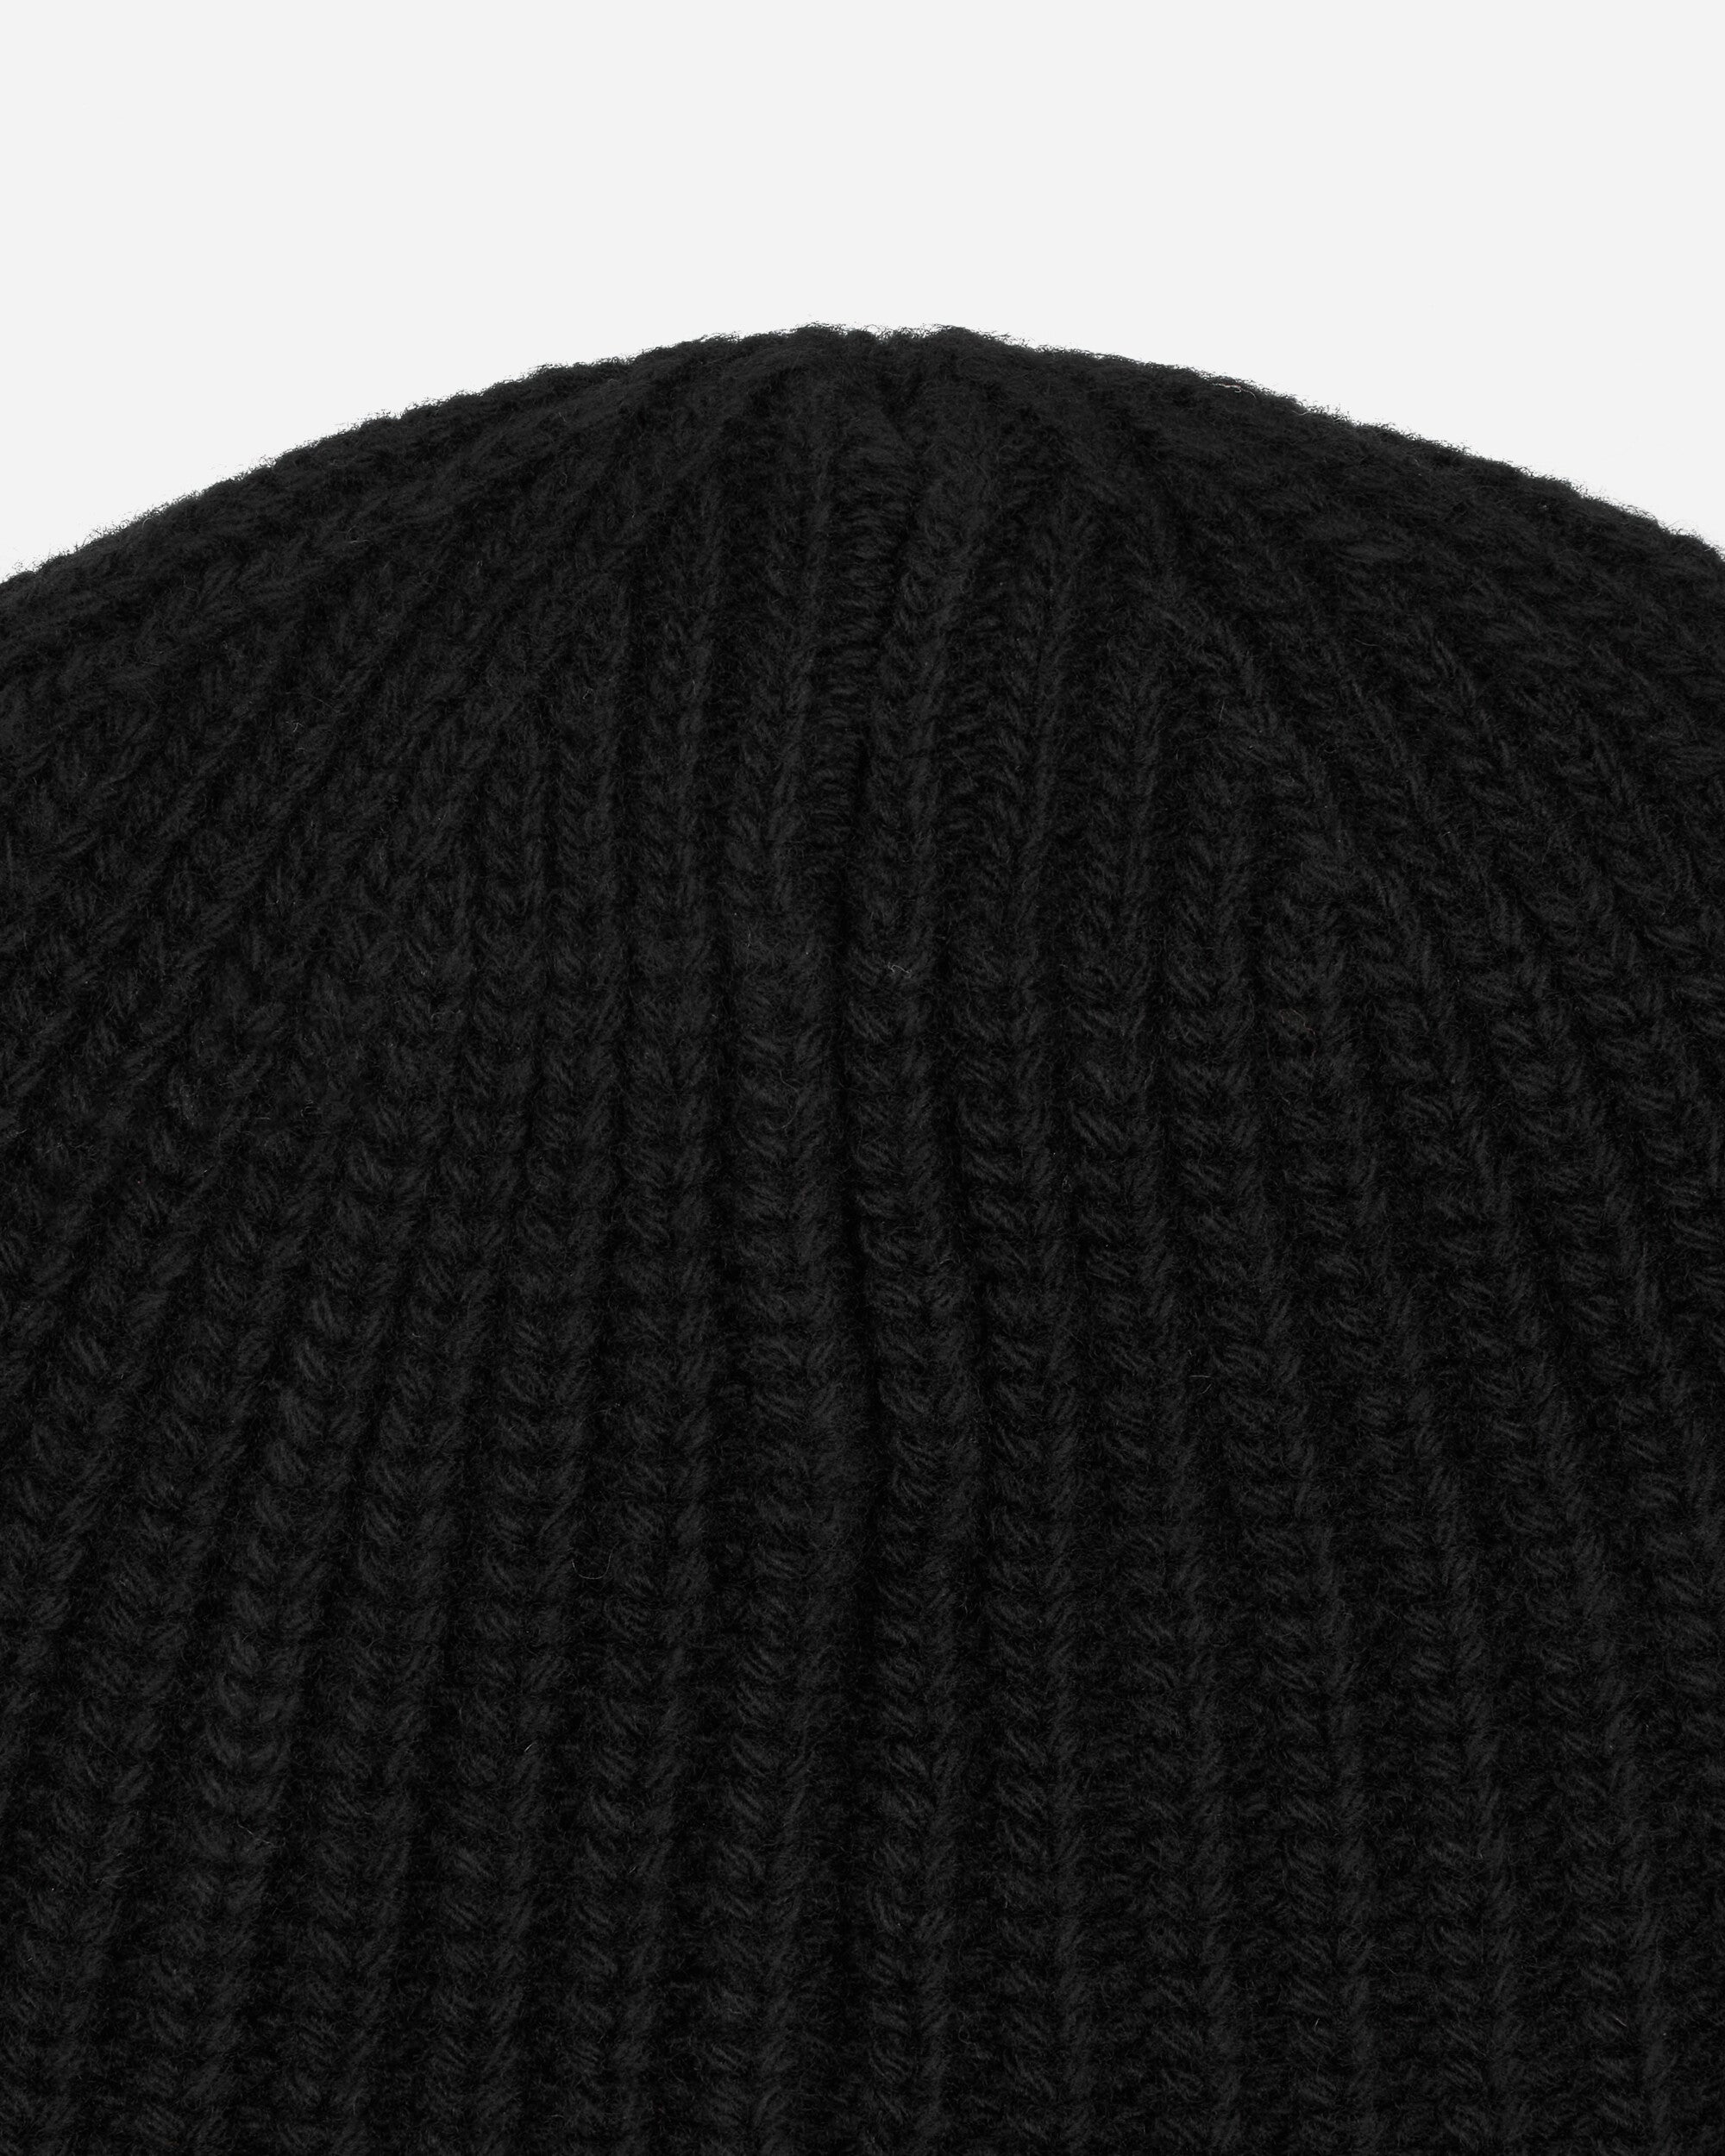 Stone Island Wool Beanie Black Hats Beanies 8115N10B5 A0029